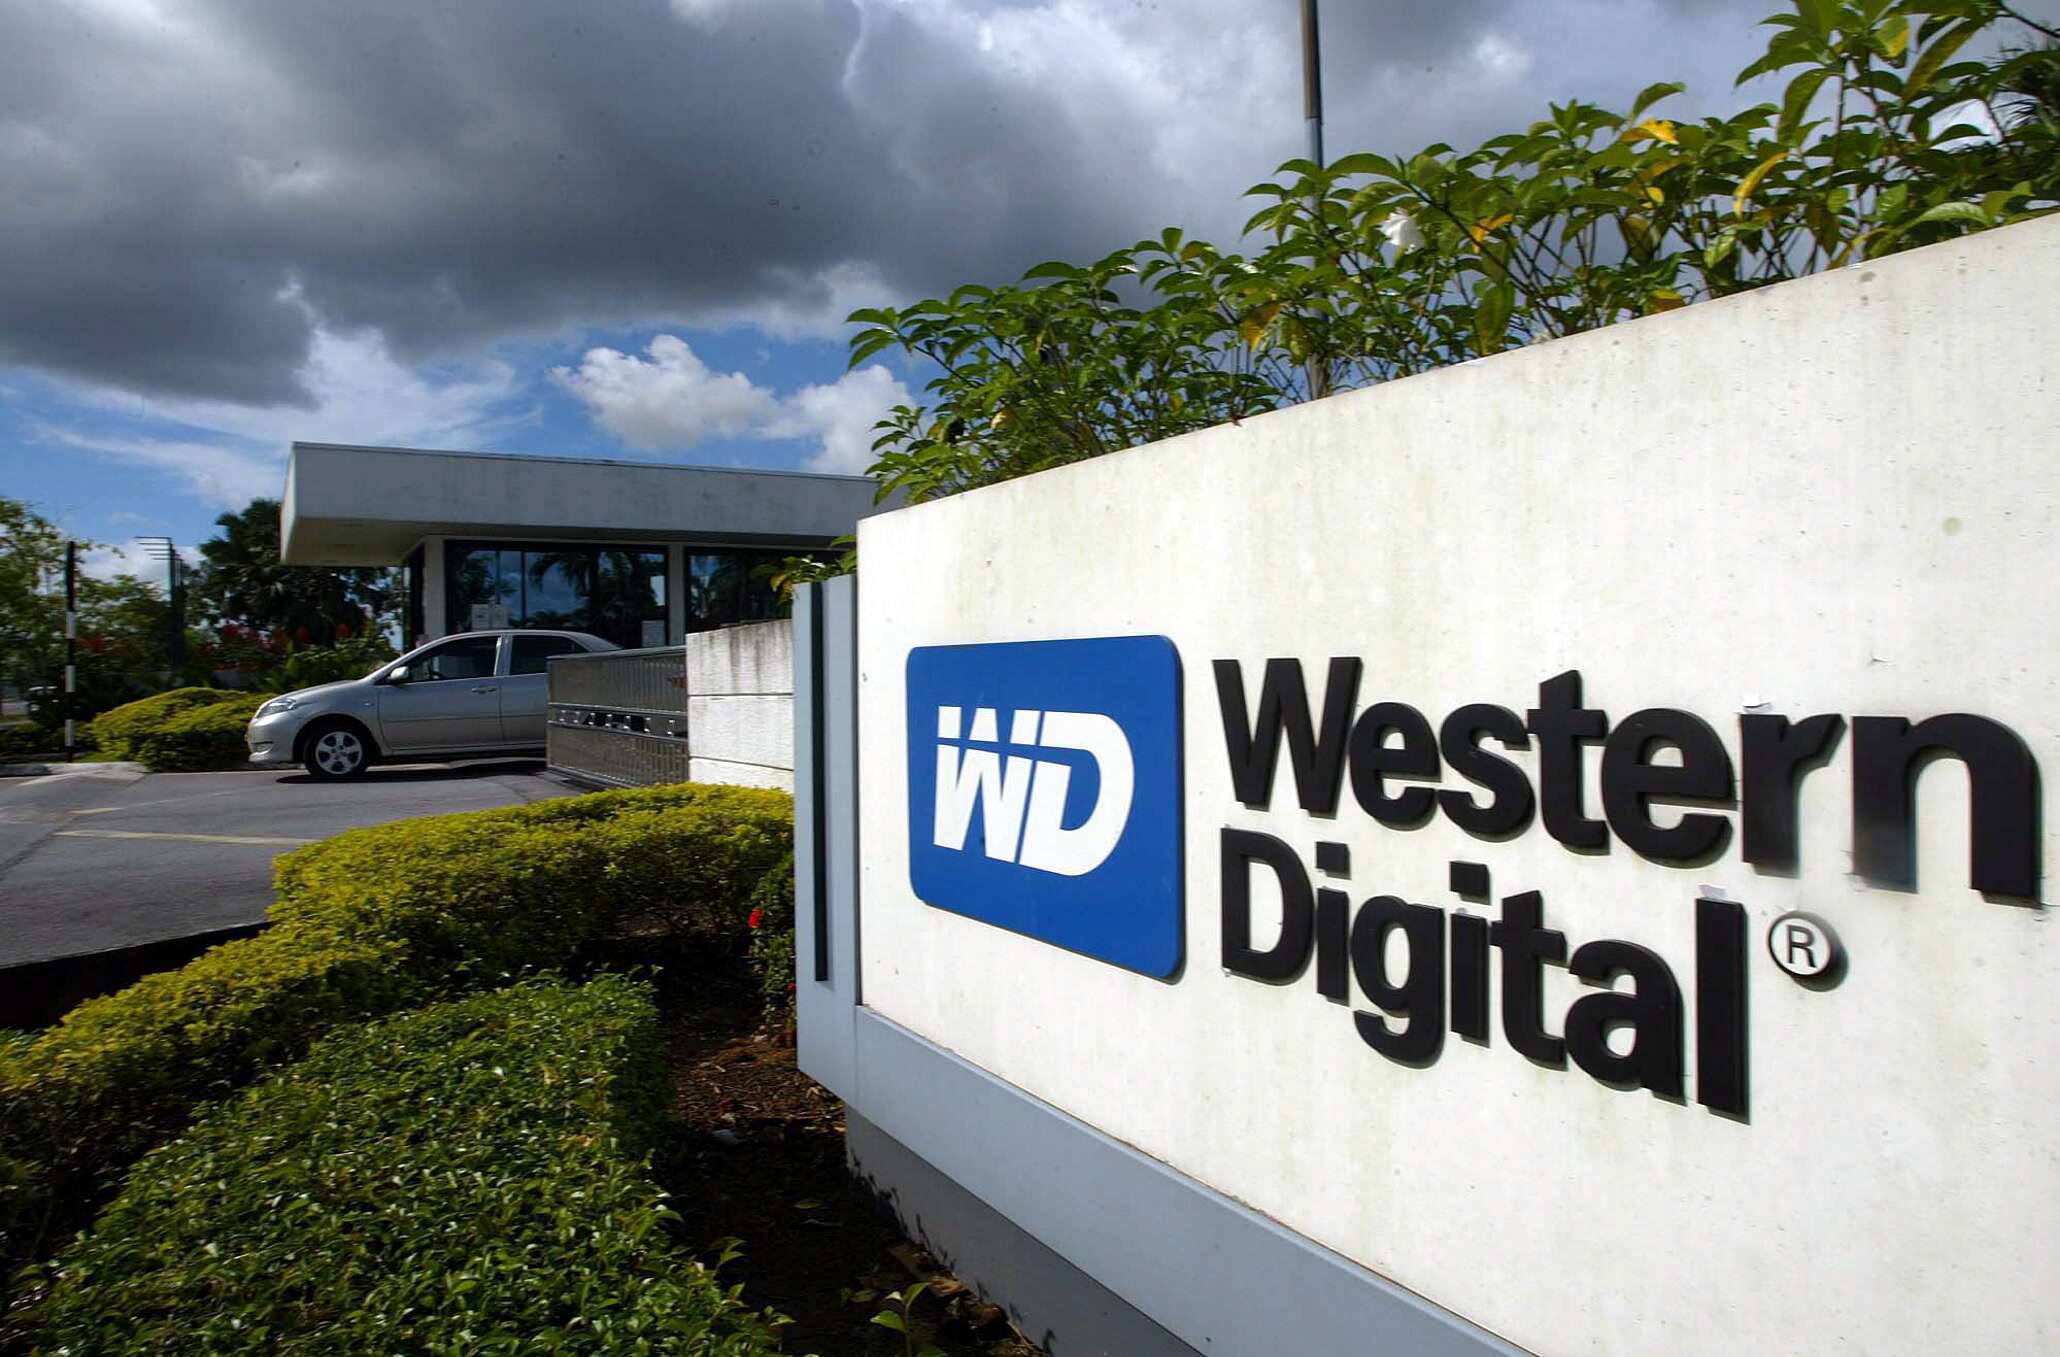 Western Digital, demandada por vender discos SSD defectuosos